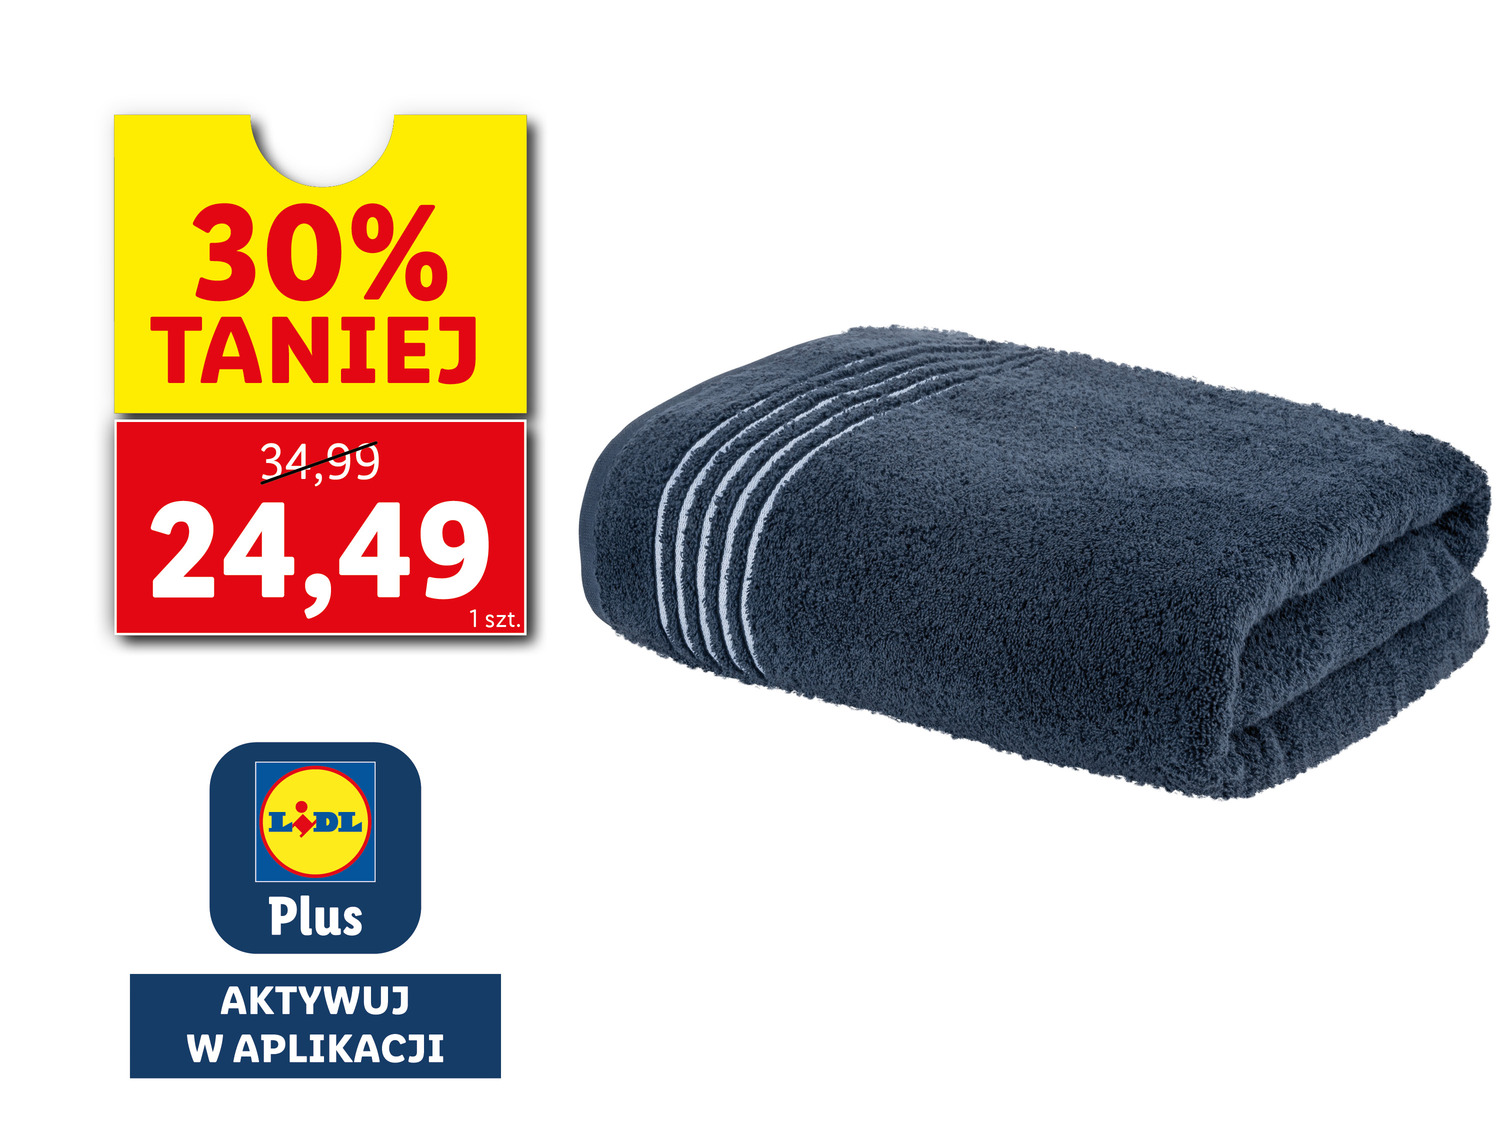 Ręcznik frotté 100 x 150 cm , cena 34,99 PLN 
- miękki i puszysty
- chłonny ...